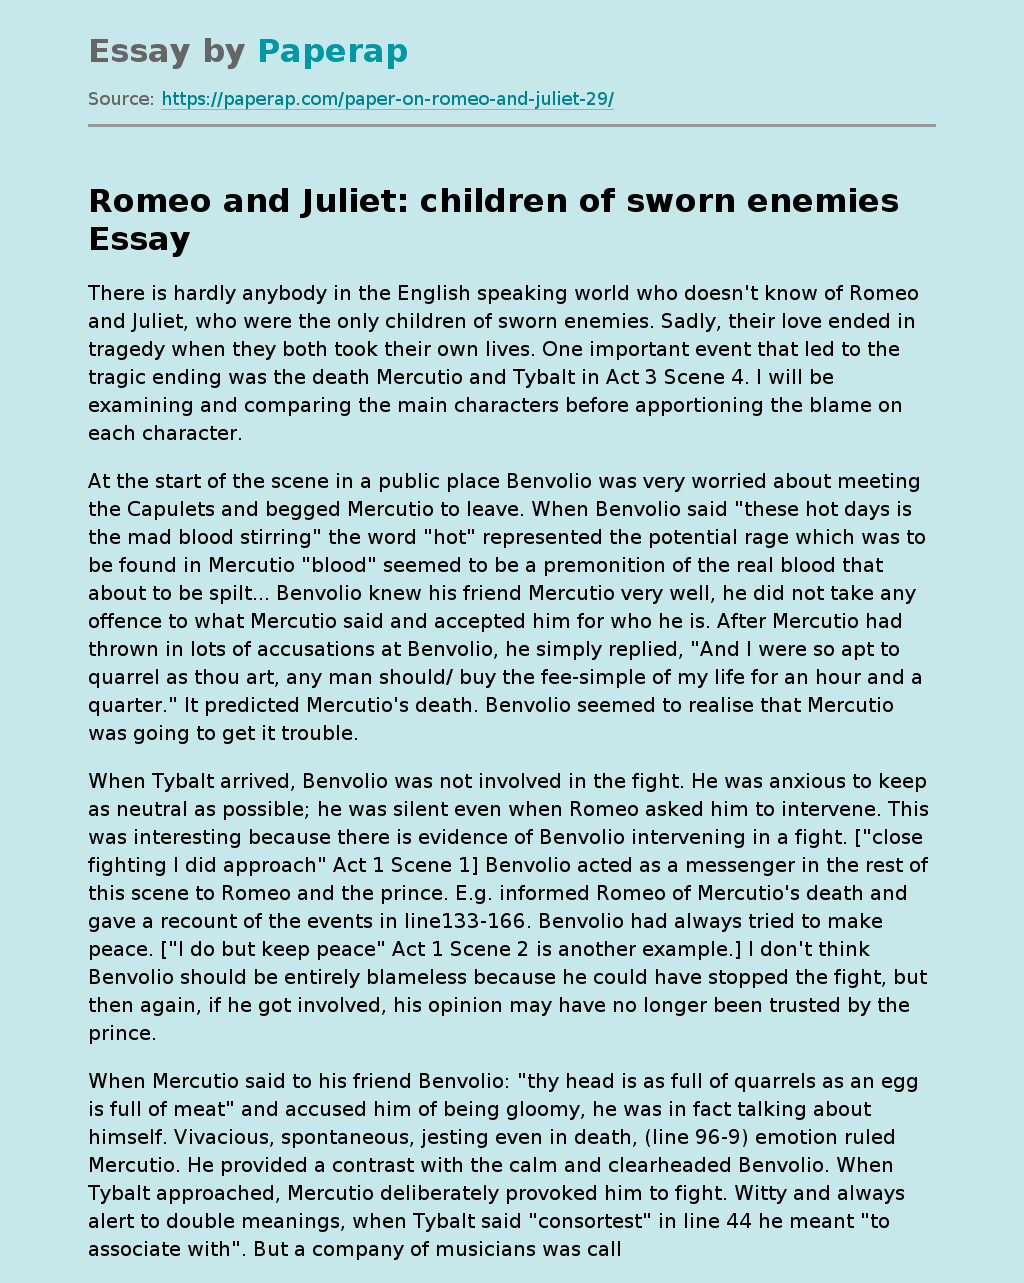 Romeo and Juliet: children of sworn enemies